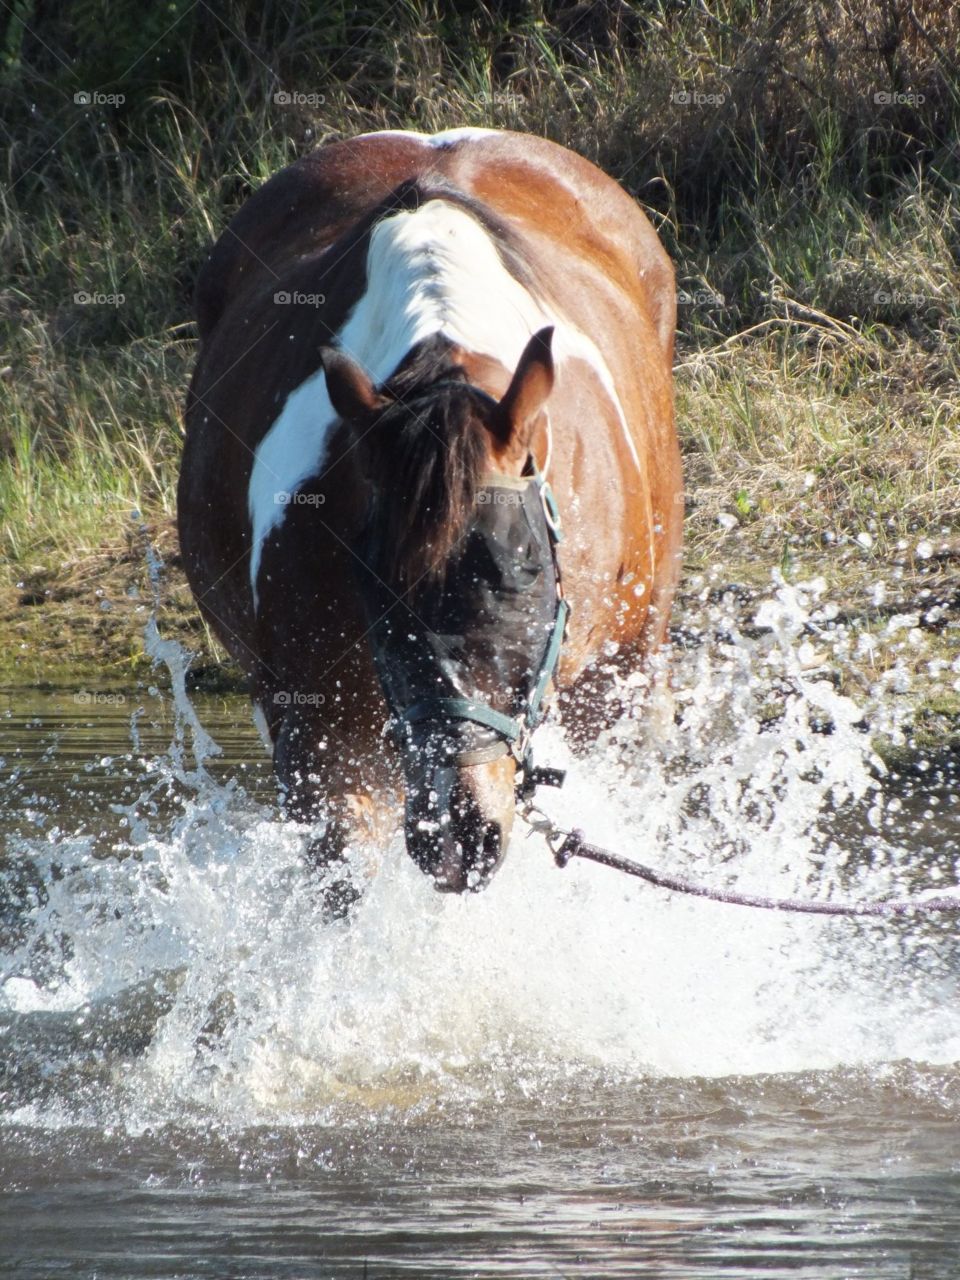 Horse at play...